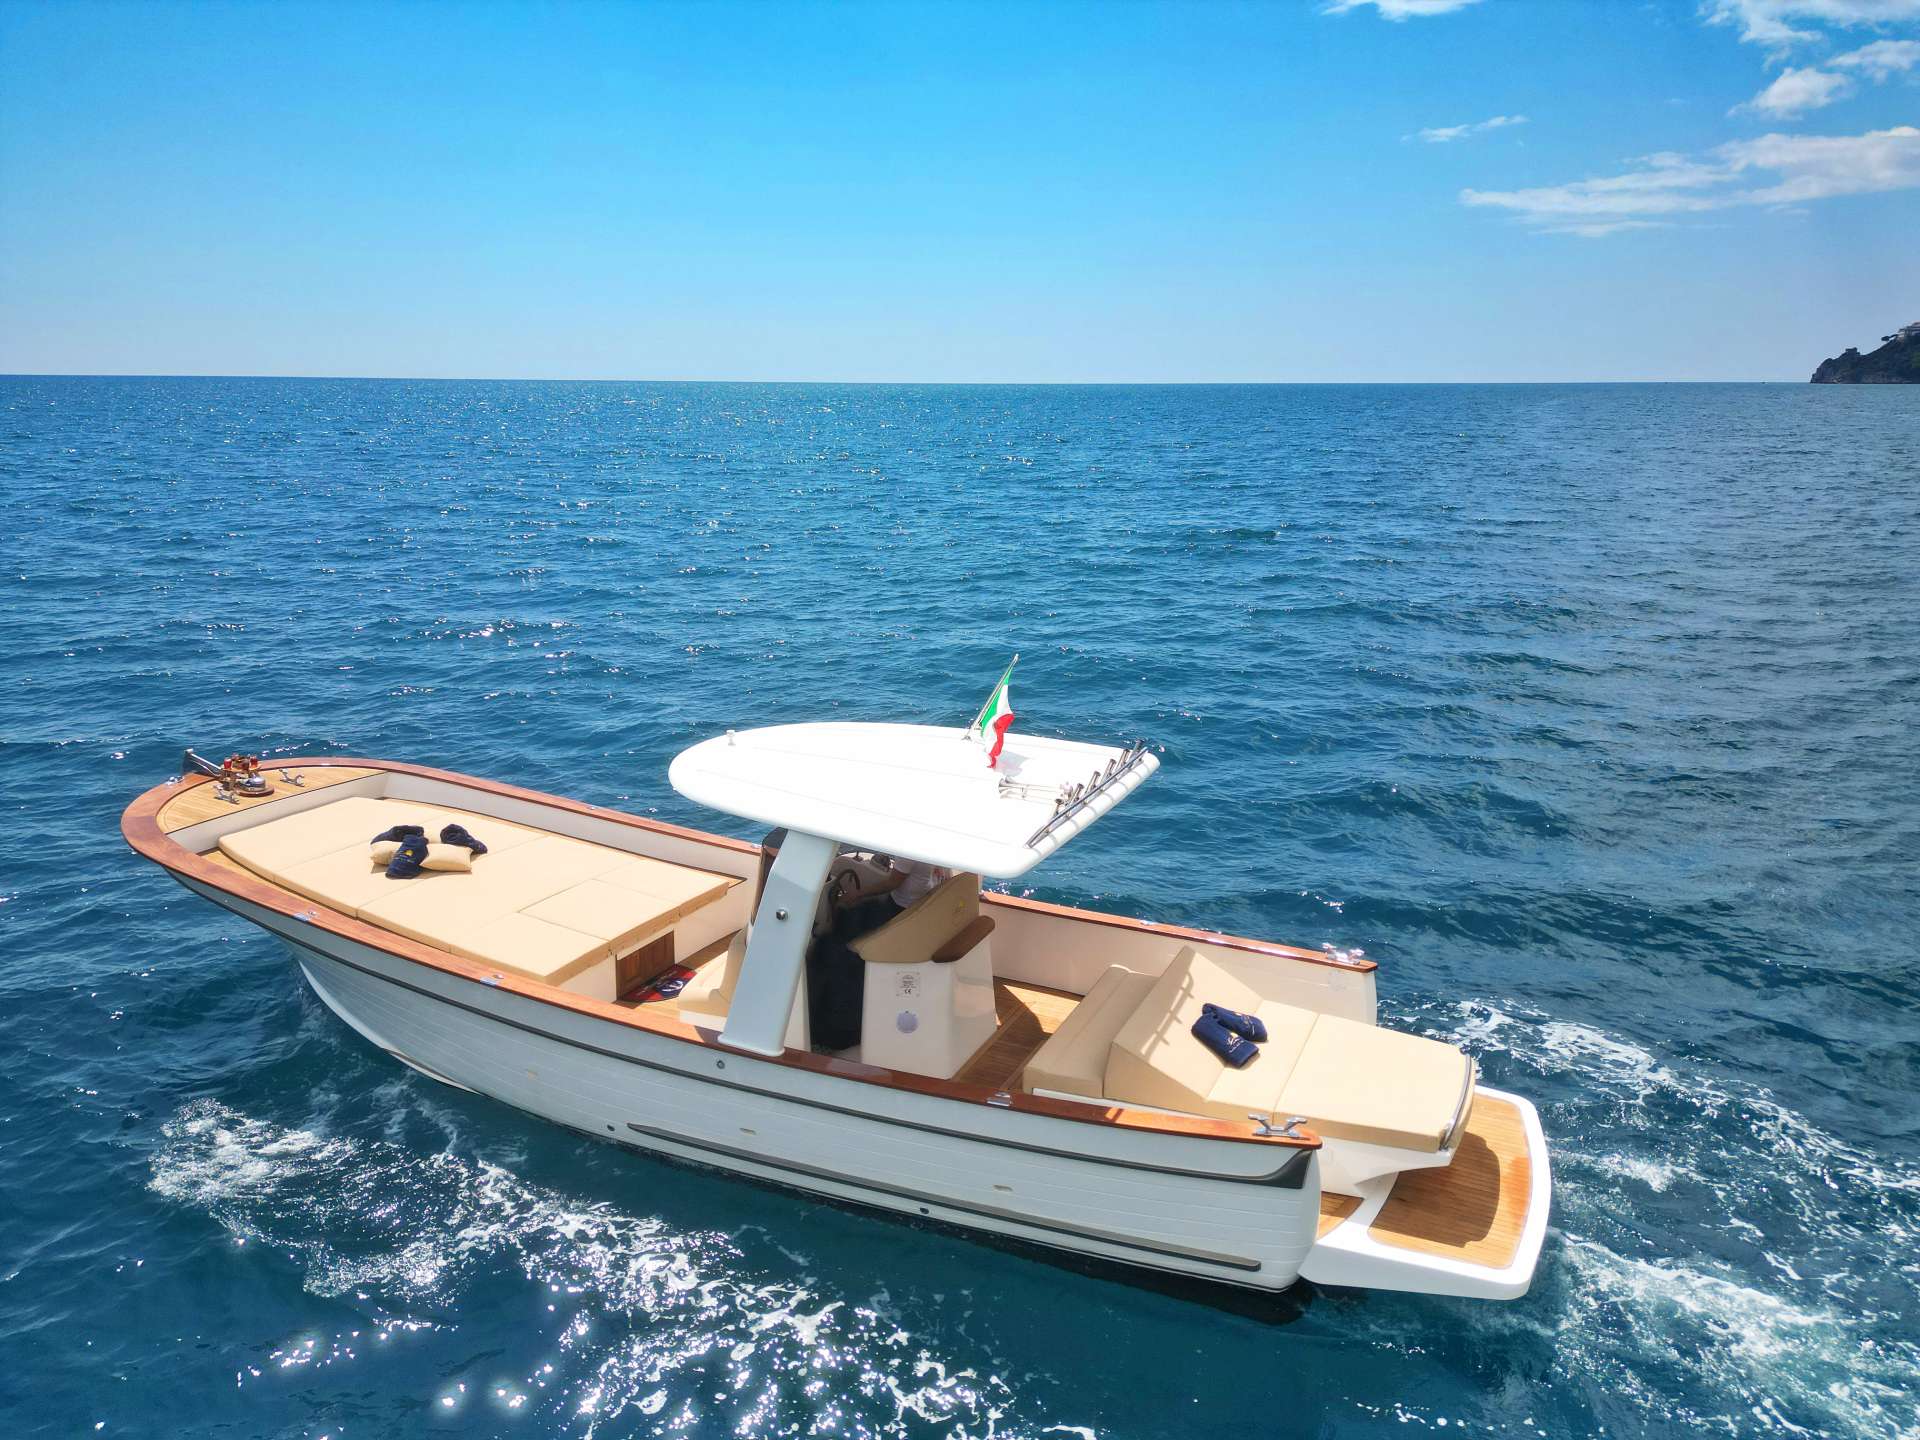 GOZZO - Yacht Charter Amalfi Coast & Boat hire in Italy Campania Amalfi Coast Amalfi Amalfi Maiori 2